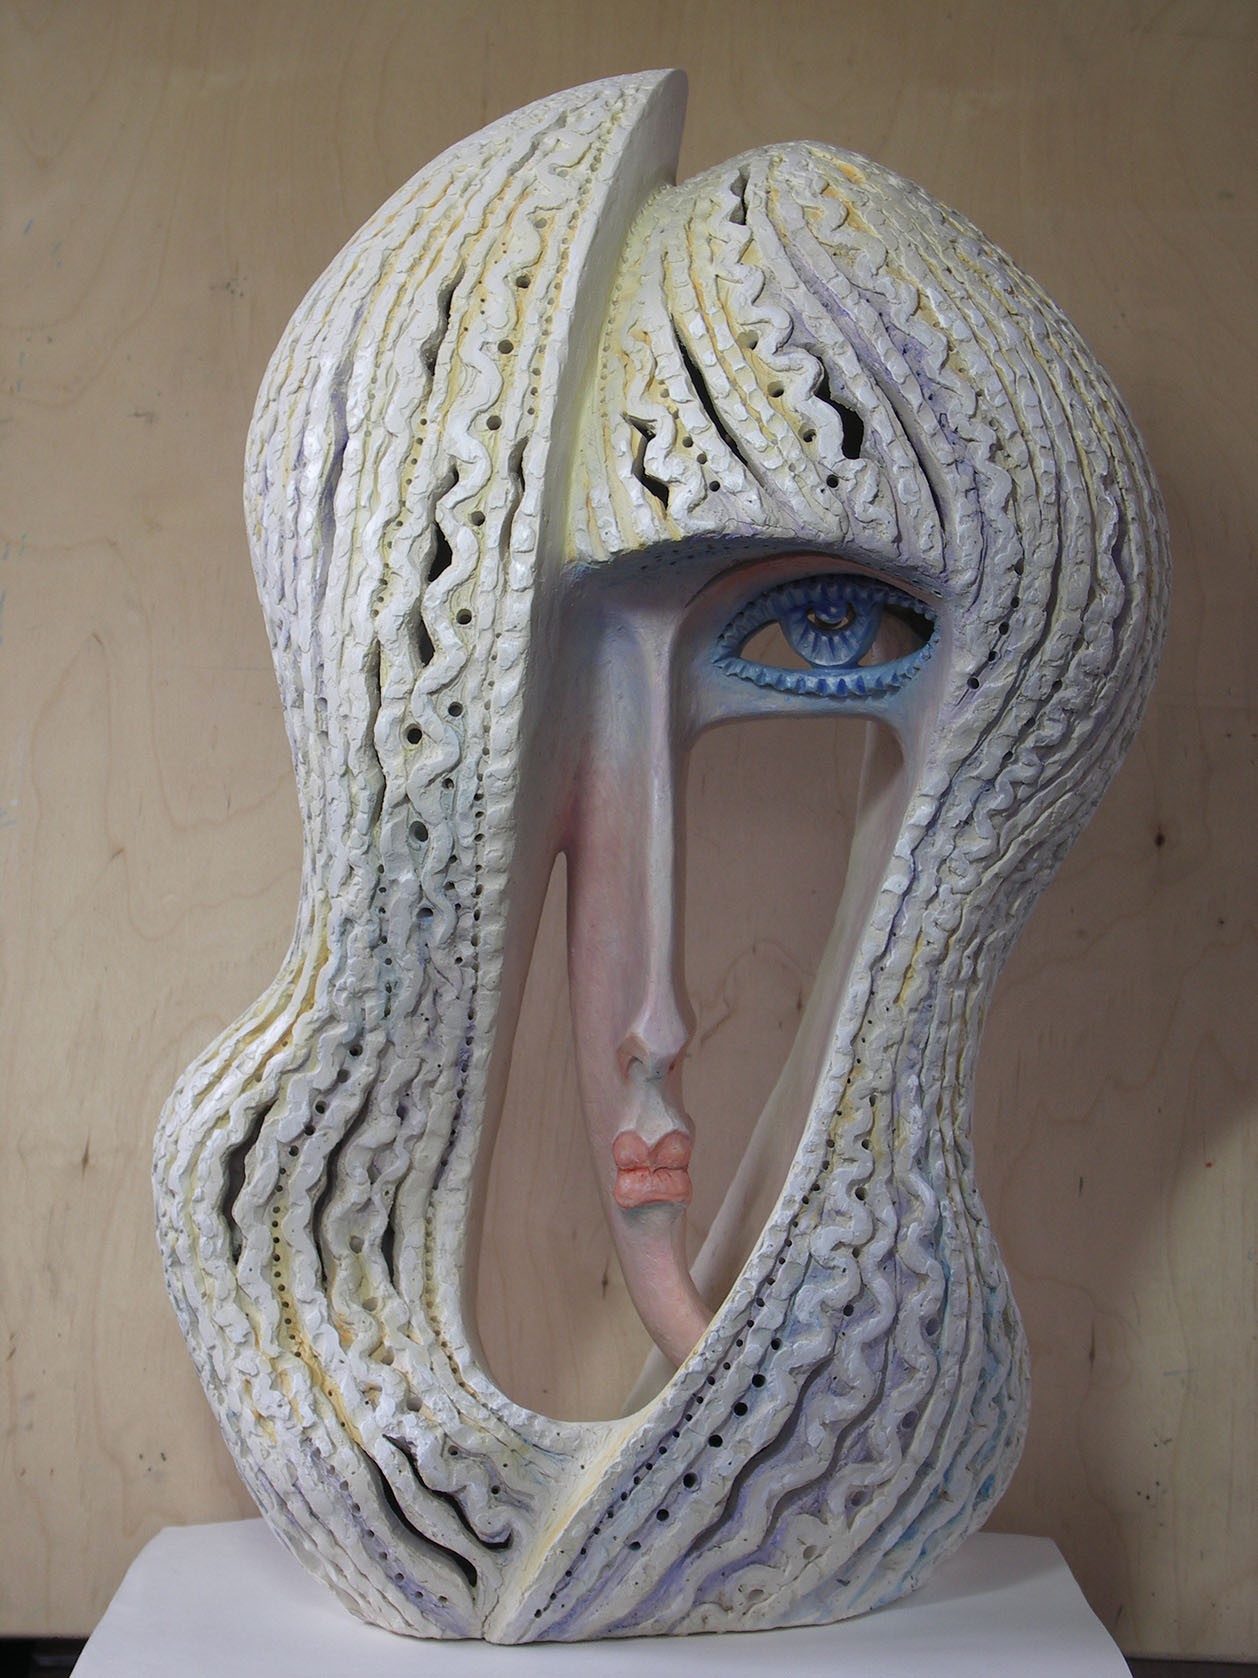 Александр Шенгелия. "Незнакомка", 2008. Керамика, 71х42х30 см. Фото из архива Александра Шенгелии